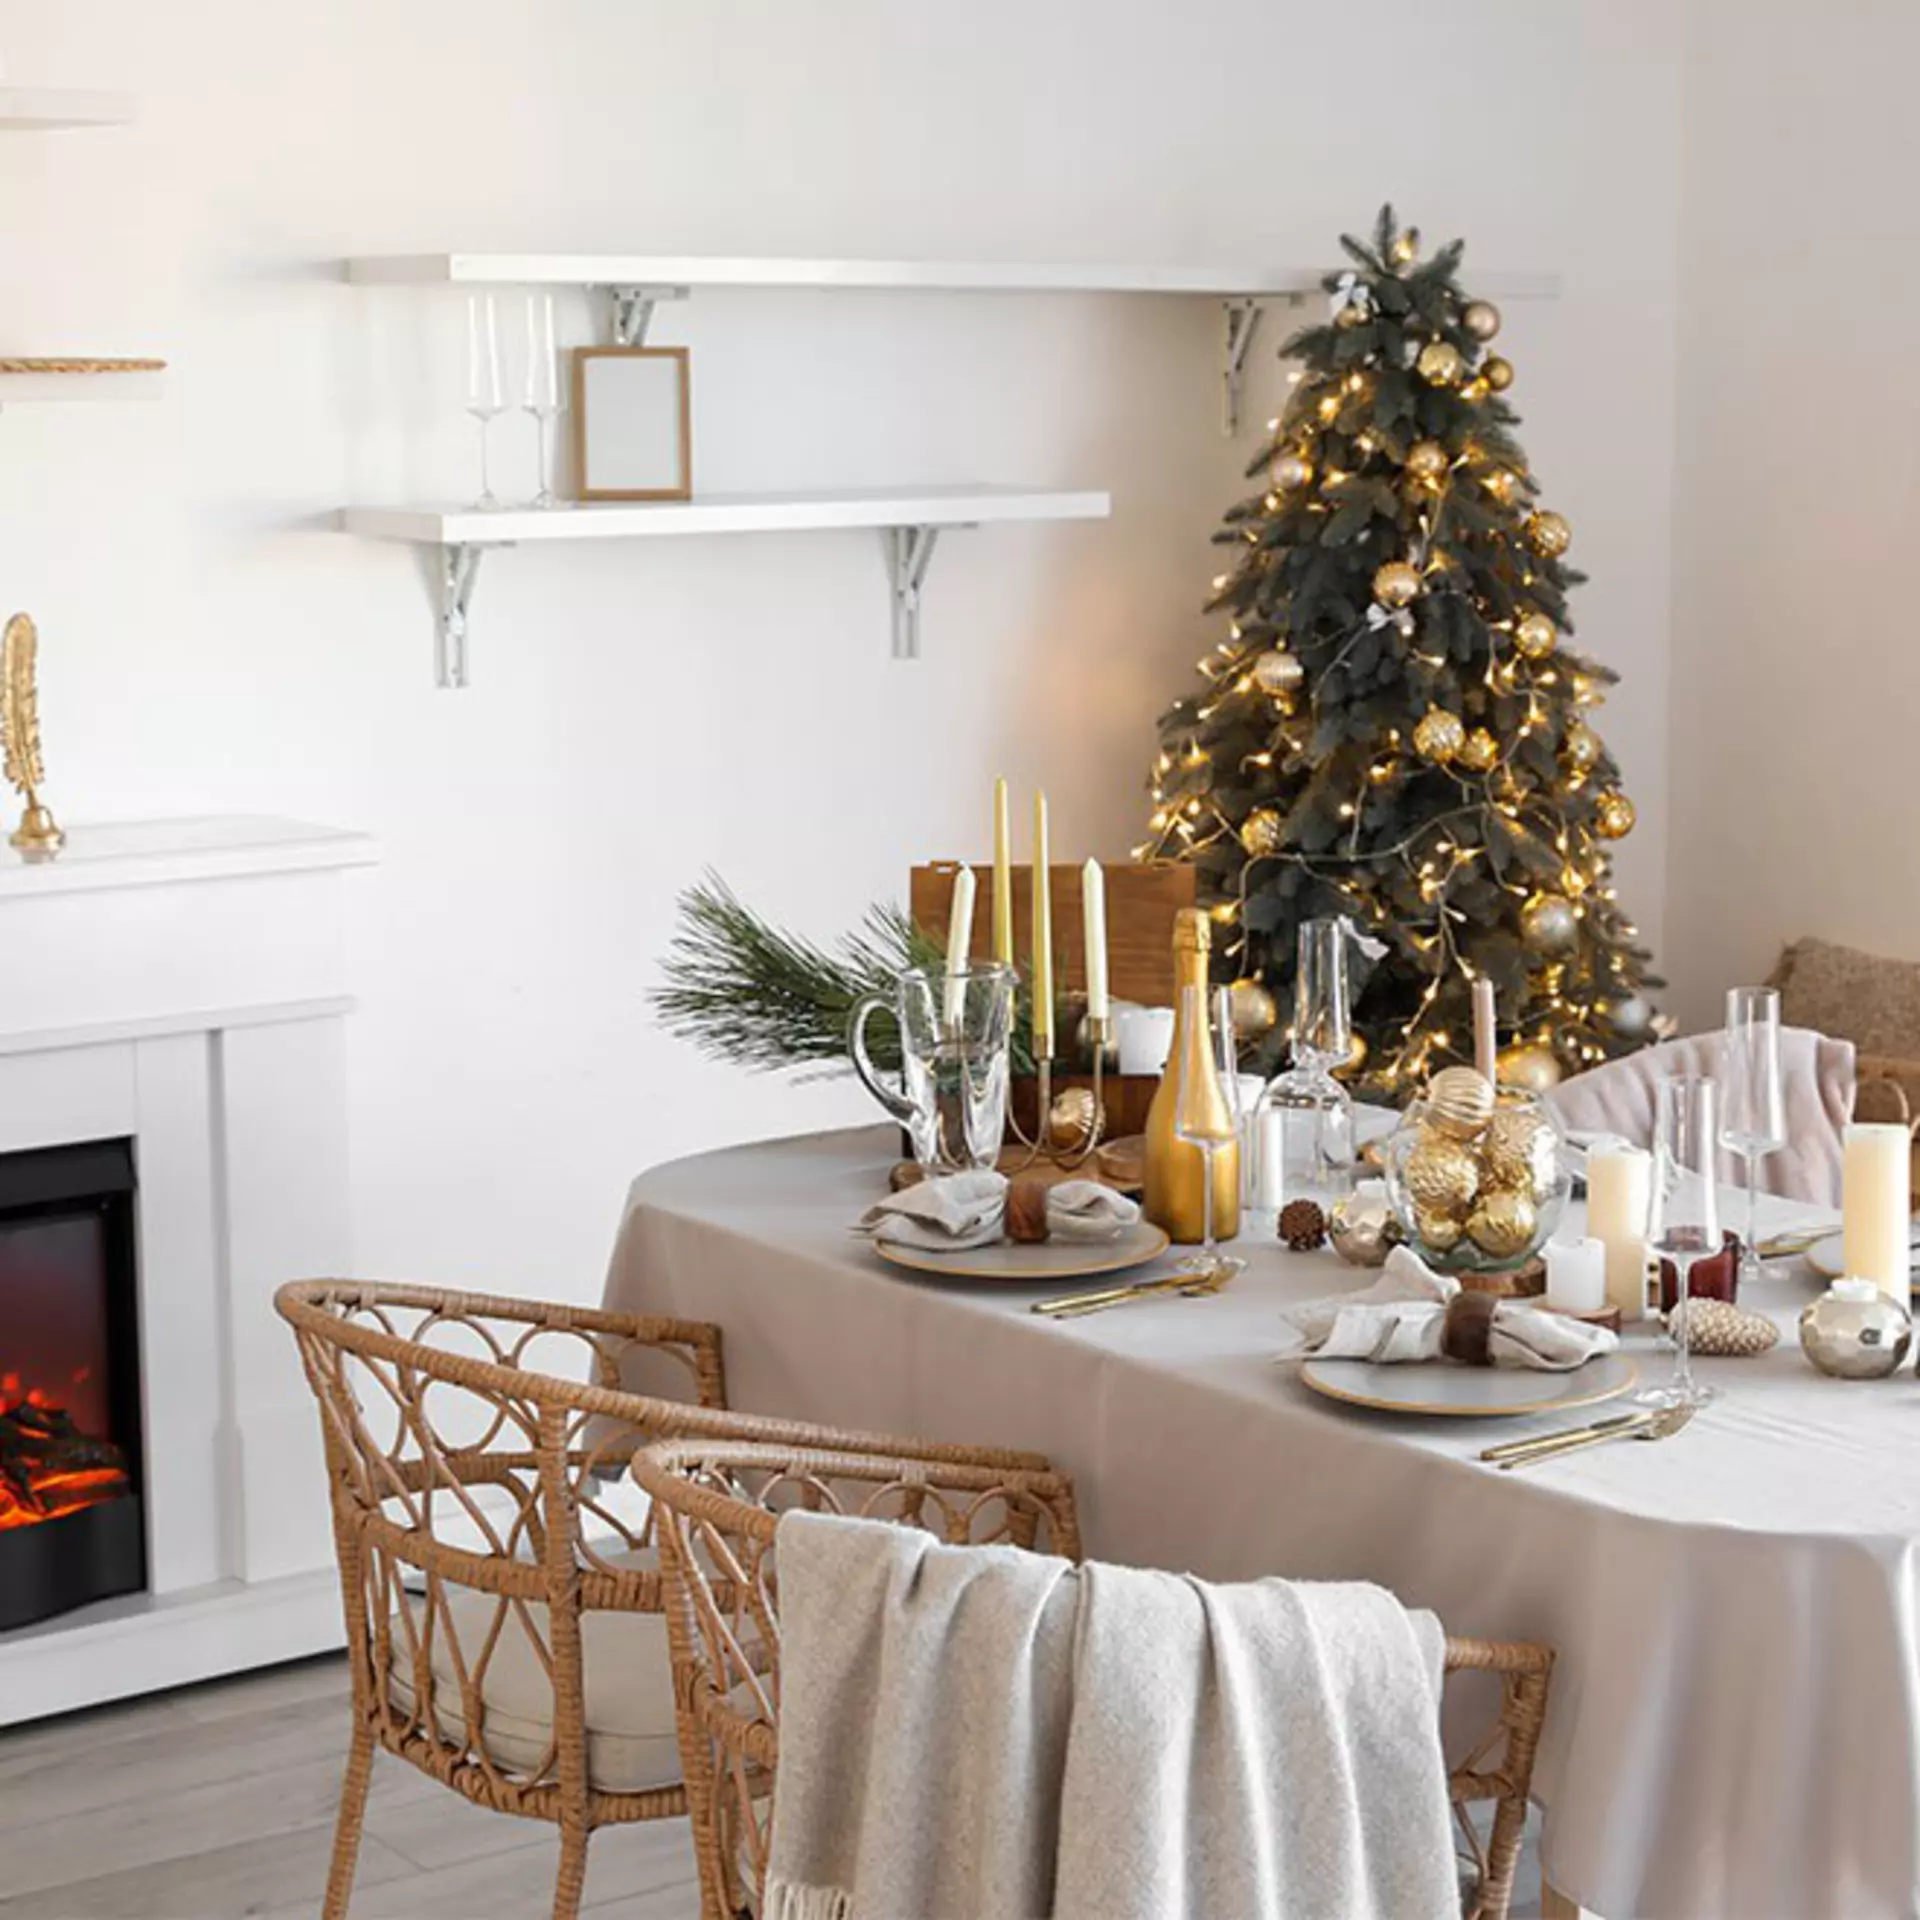 Ein weihnachtlich geschmückter Tisch mit einem geschmückten Weihnachtsbaum und einem Kamin im Hintergrund